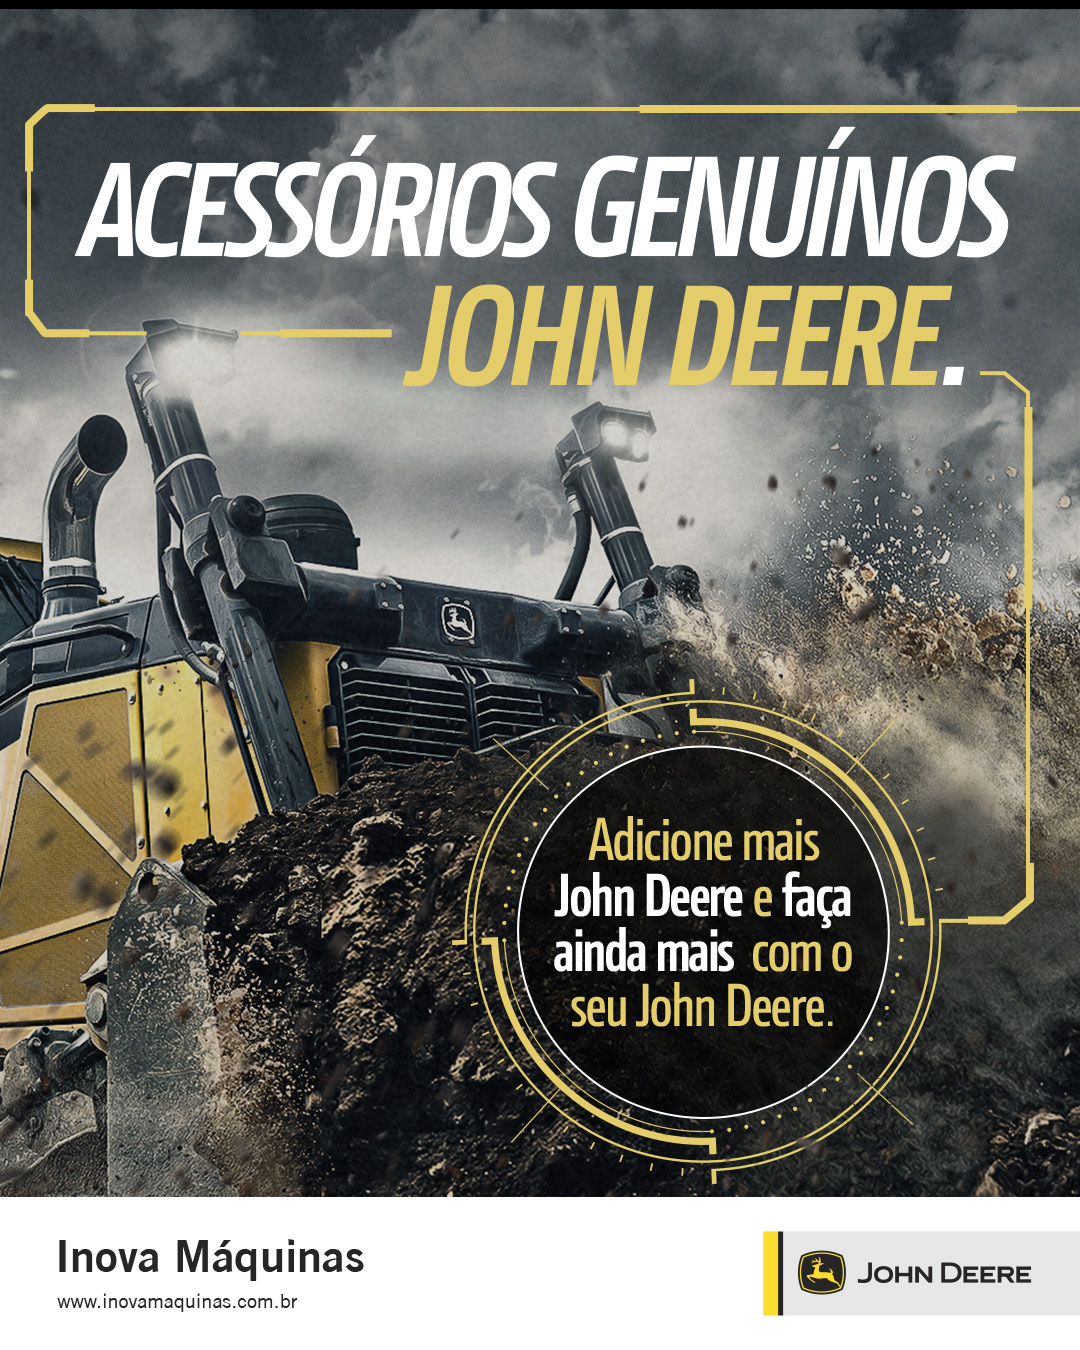 Acessórios Genuínos: a melhor maneira para manter o padrão de qualidade John Deere.